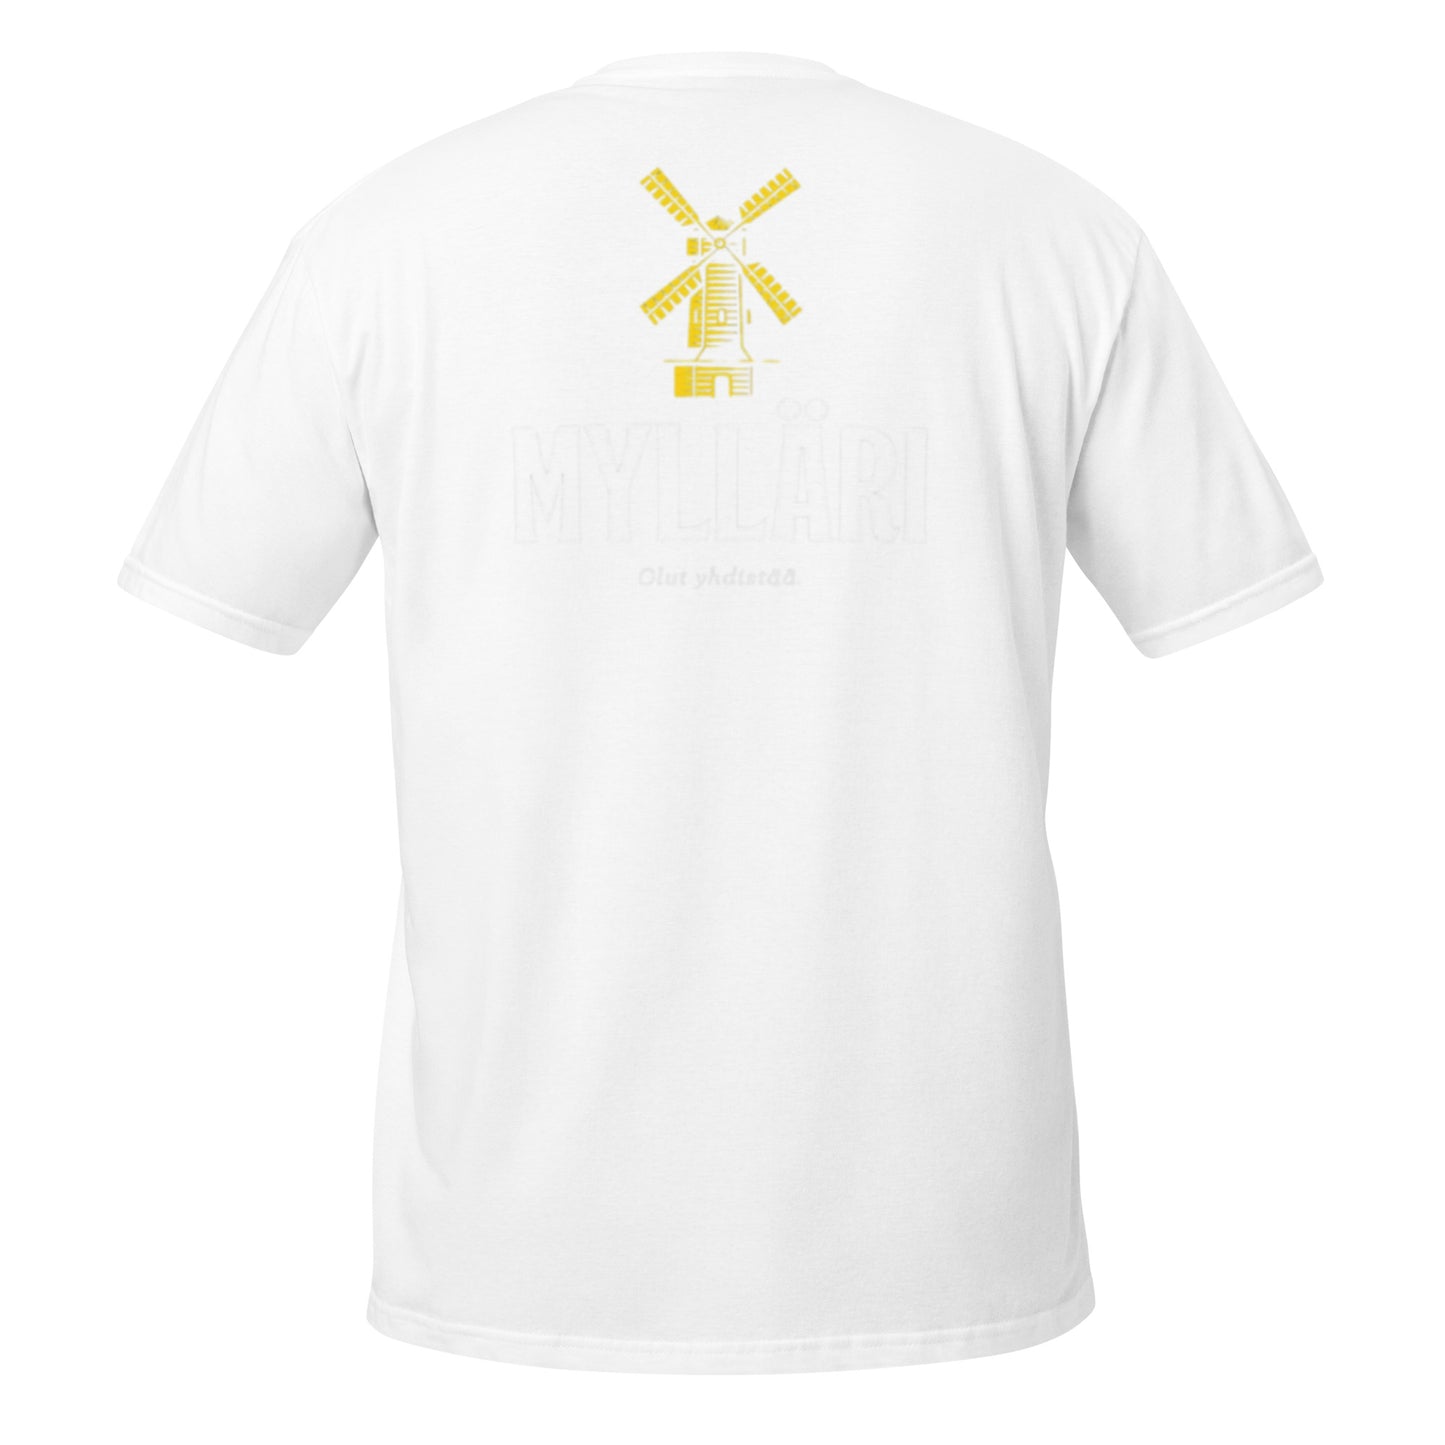 "Mylläri" unisex t-paita (isot kuvat selkä + rinta)